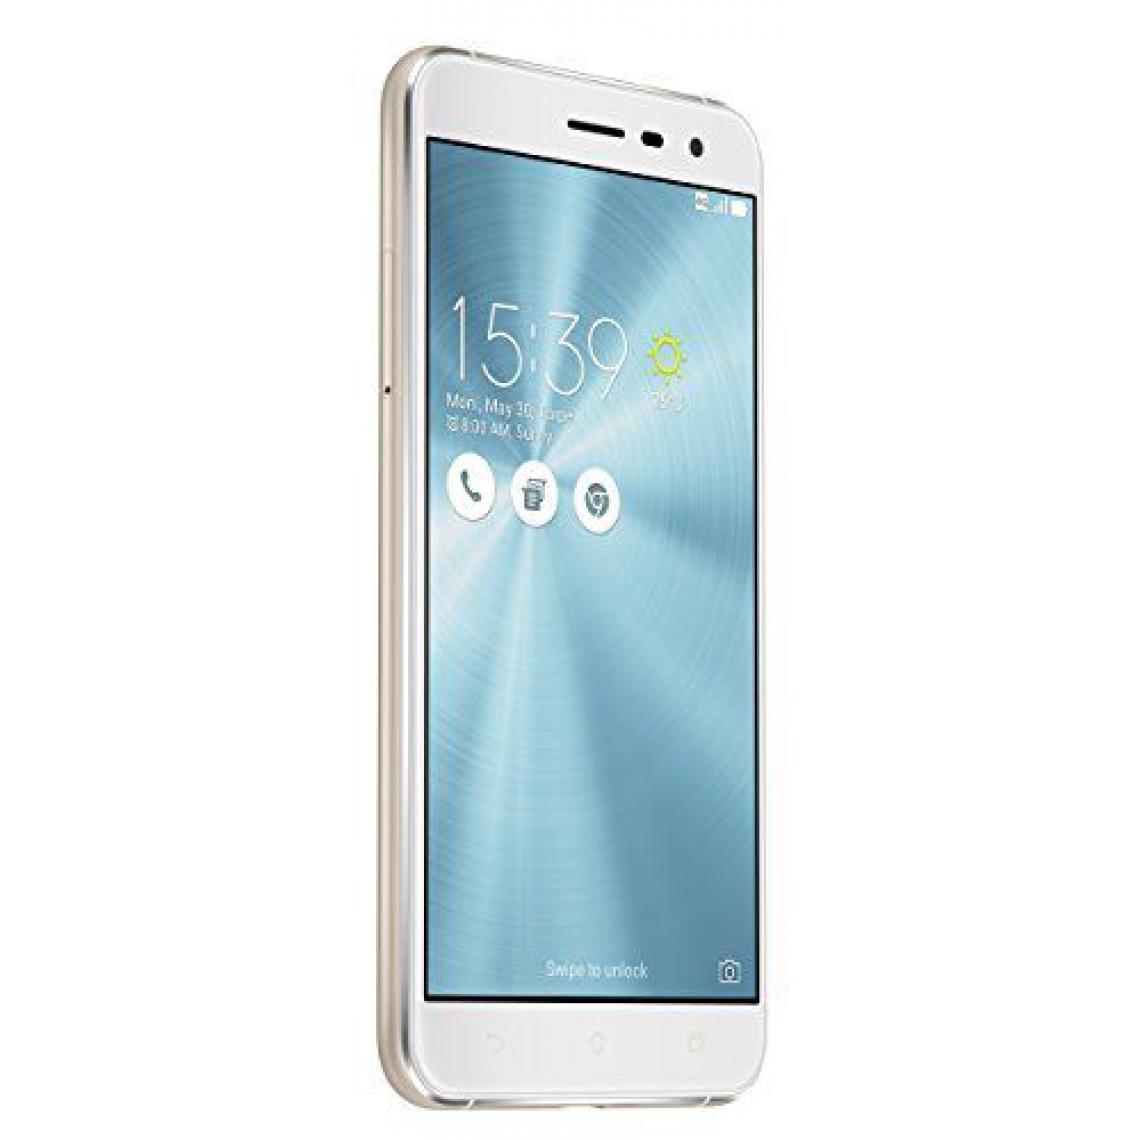 Asus - 'Asus ze520kl-1b011ww Zenfone 3-Smartphone de 5.2WiFi, enregistrement vidéo 4K, RAM de 4Go, mémoire interne de 64Go, appareil photo 16MP, Android 6.0, blanc - Smartphone Android